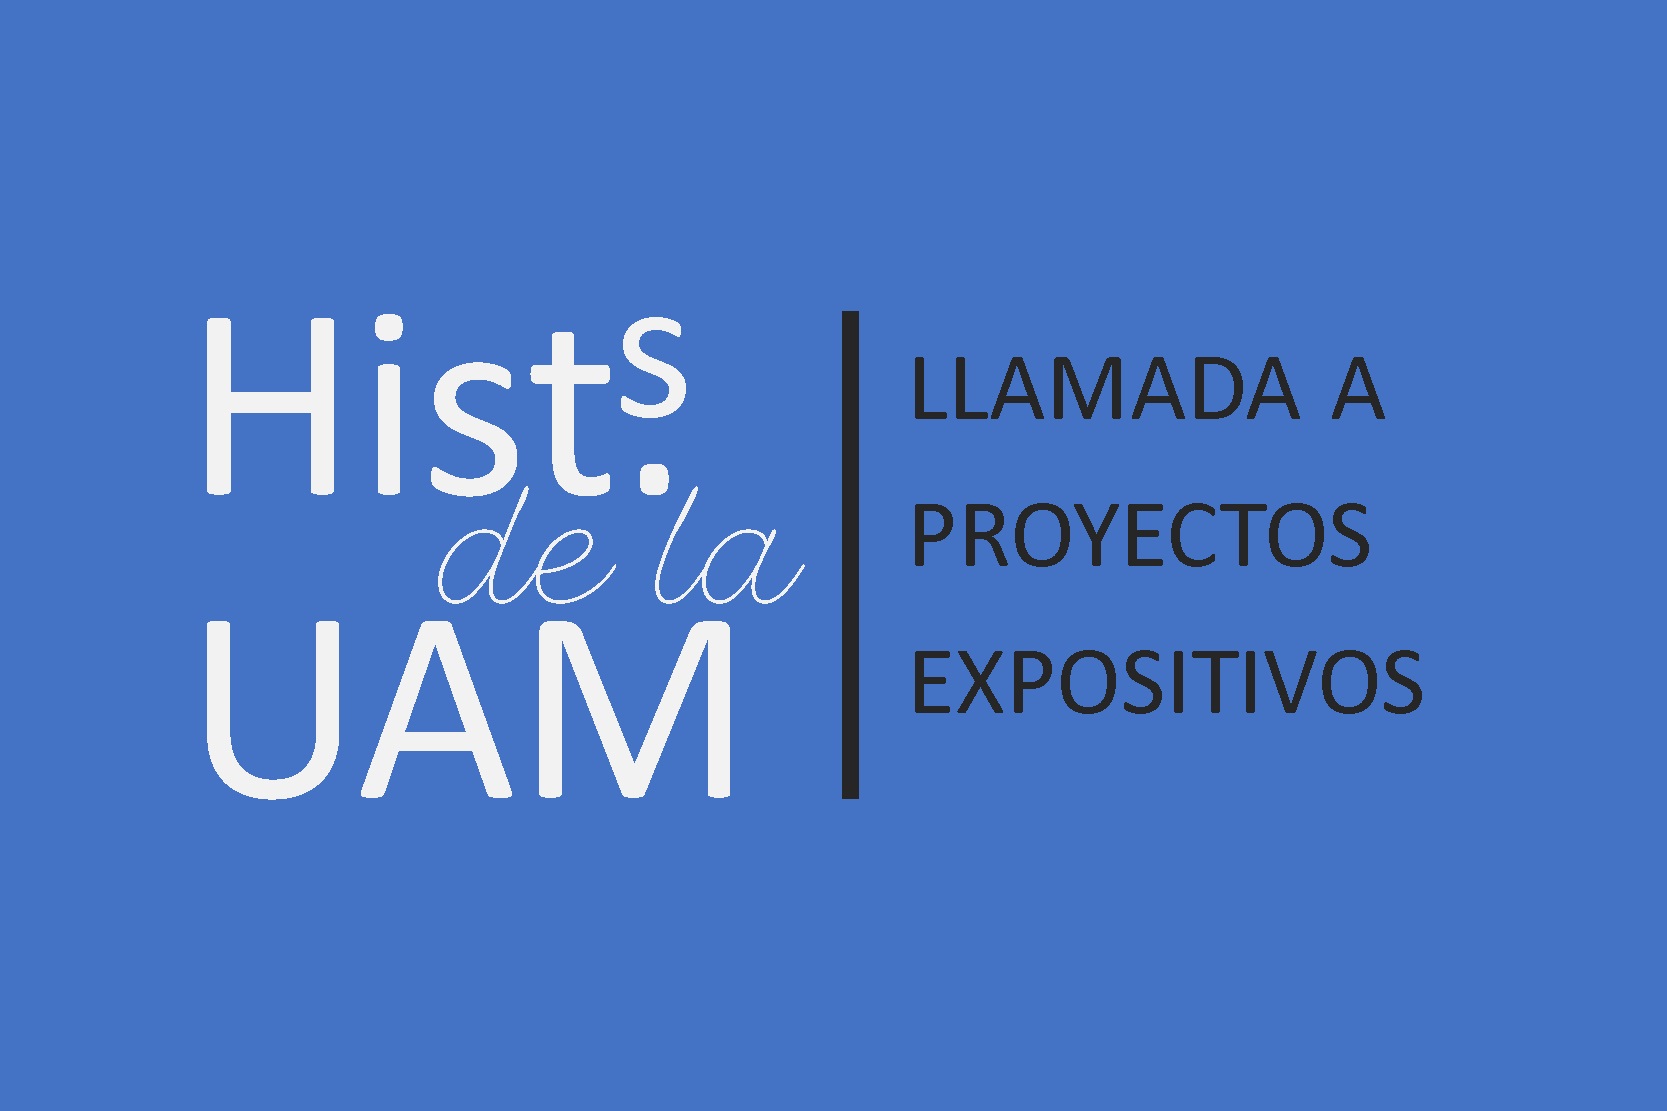 Historia de la UAM. Llamada a proyectos expositivos.